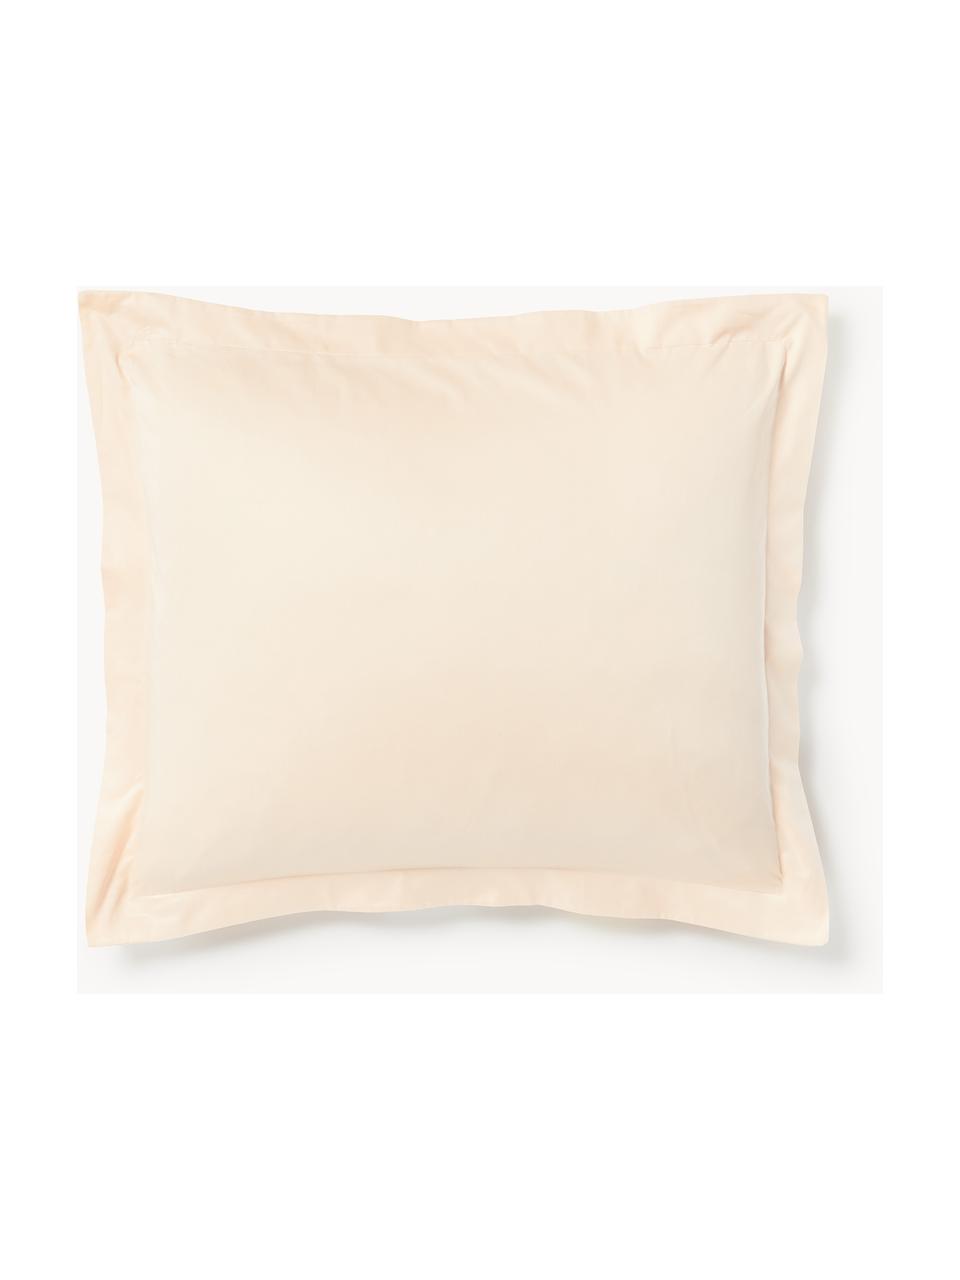 Poszewka na poduszkę z satyny bawełnianej Premium, Brzoskwiniowy, S 40 x D 80 cm